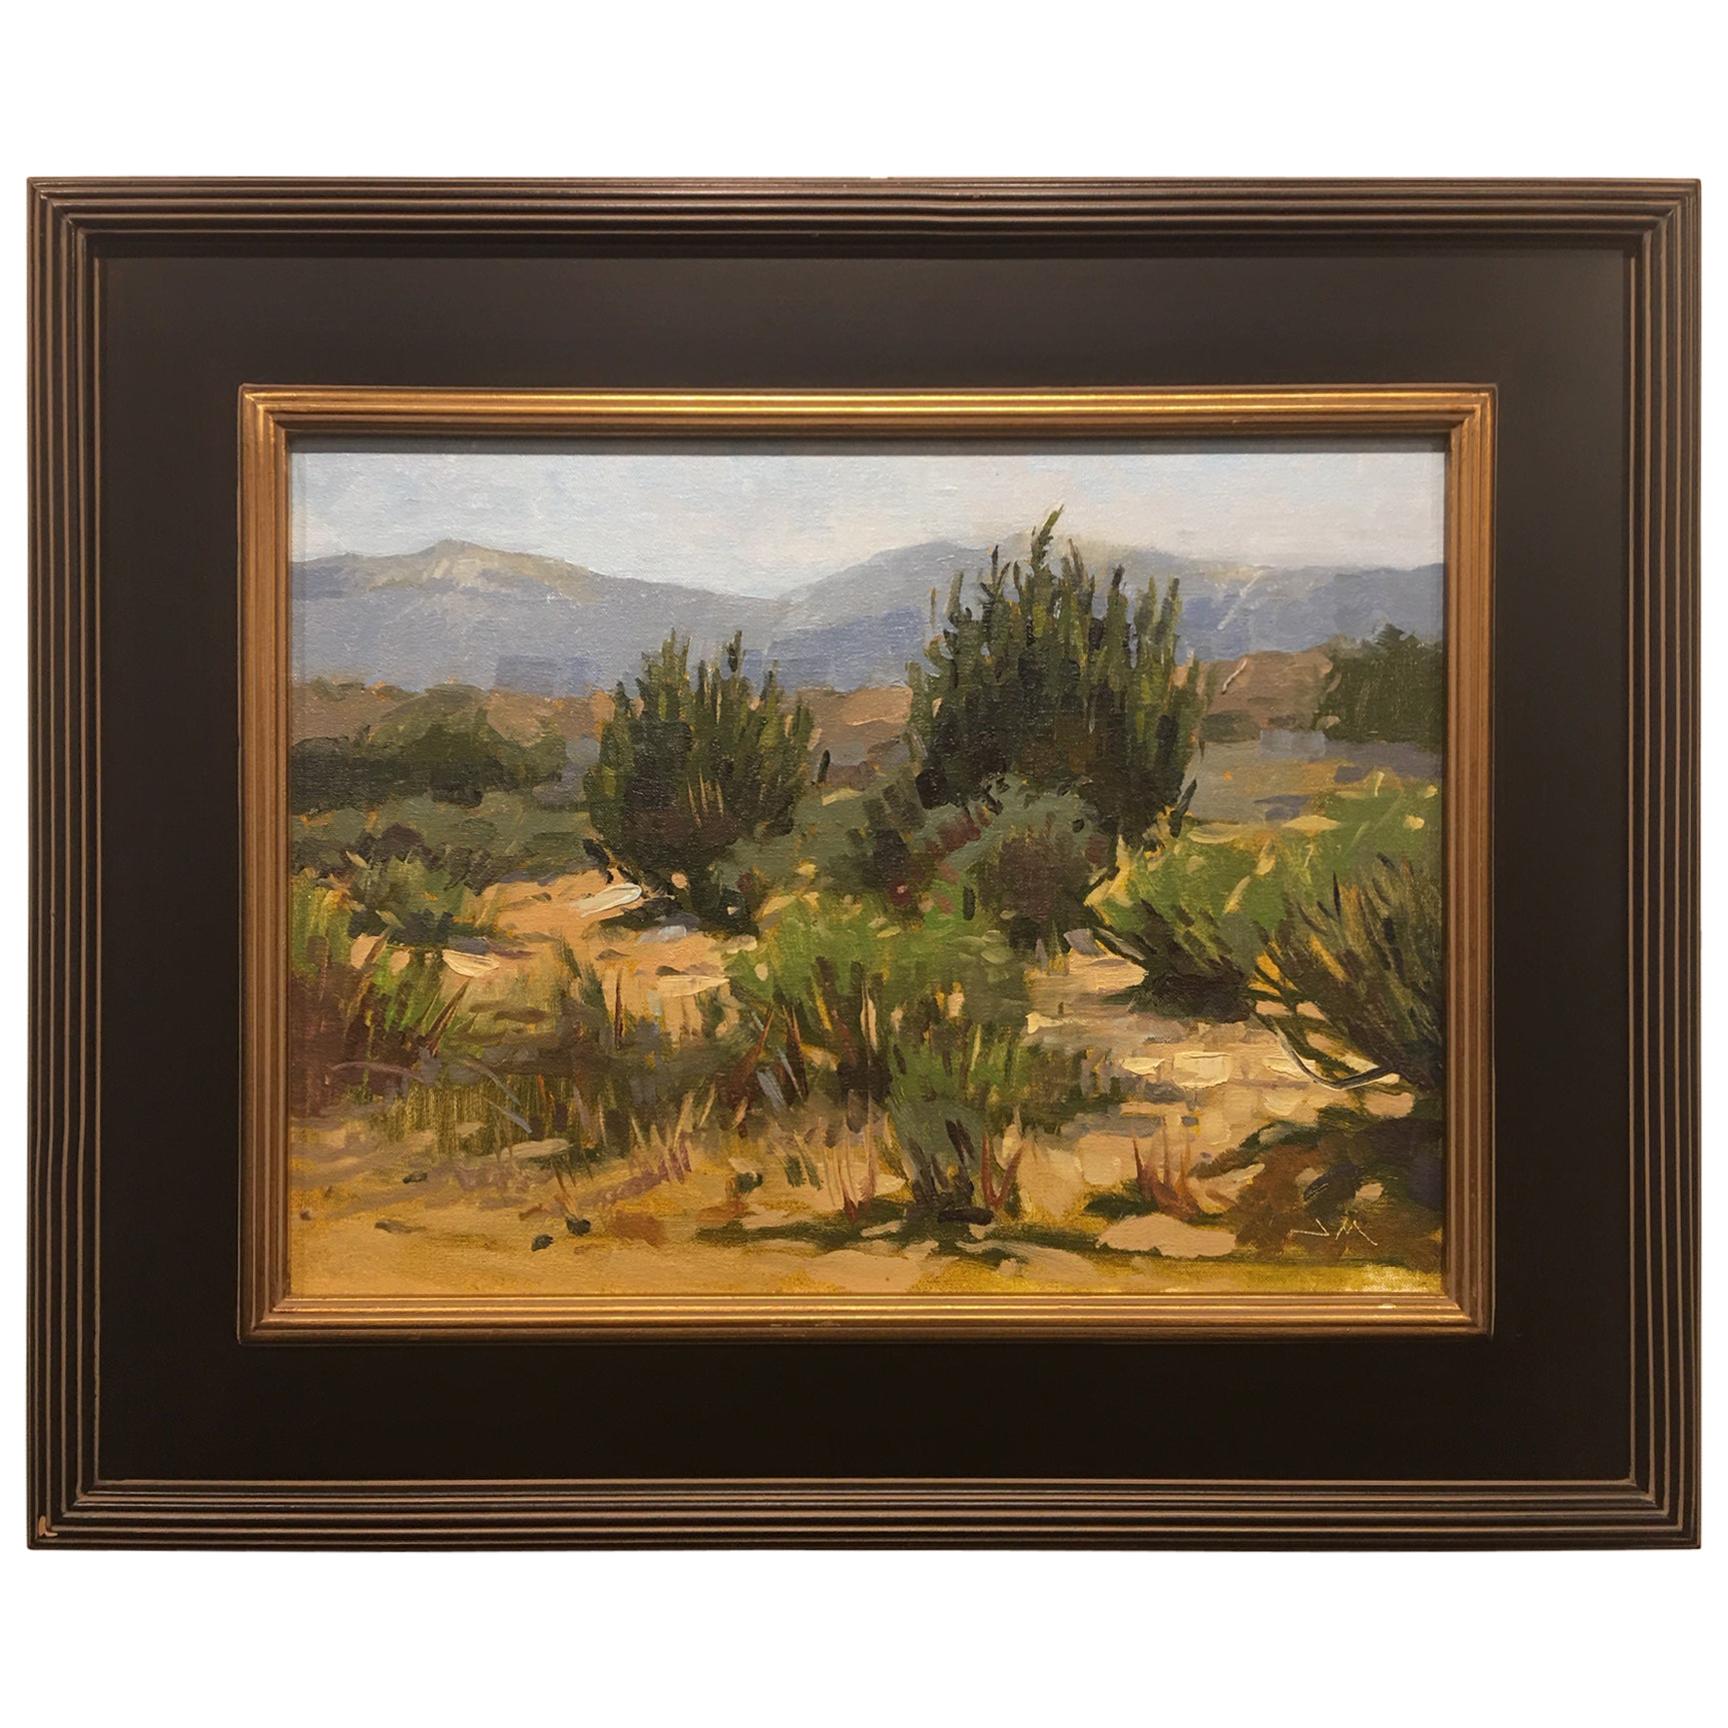 Framed Oil on Canvas "Desert Greens" New Mexico Desert Scene, Jeff Markowsky